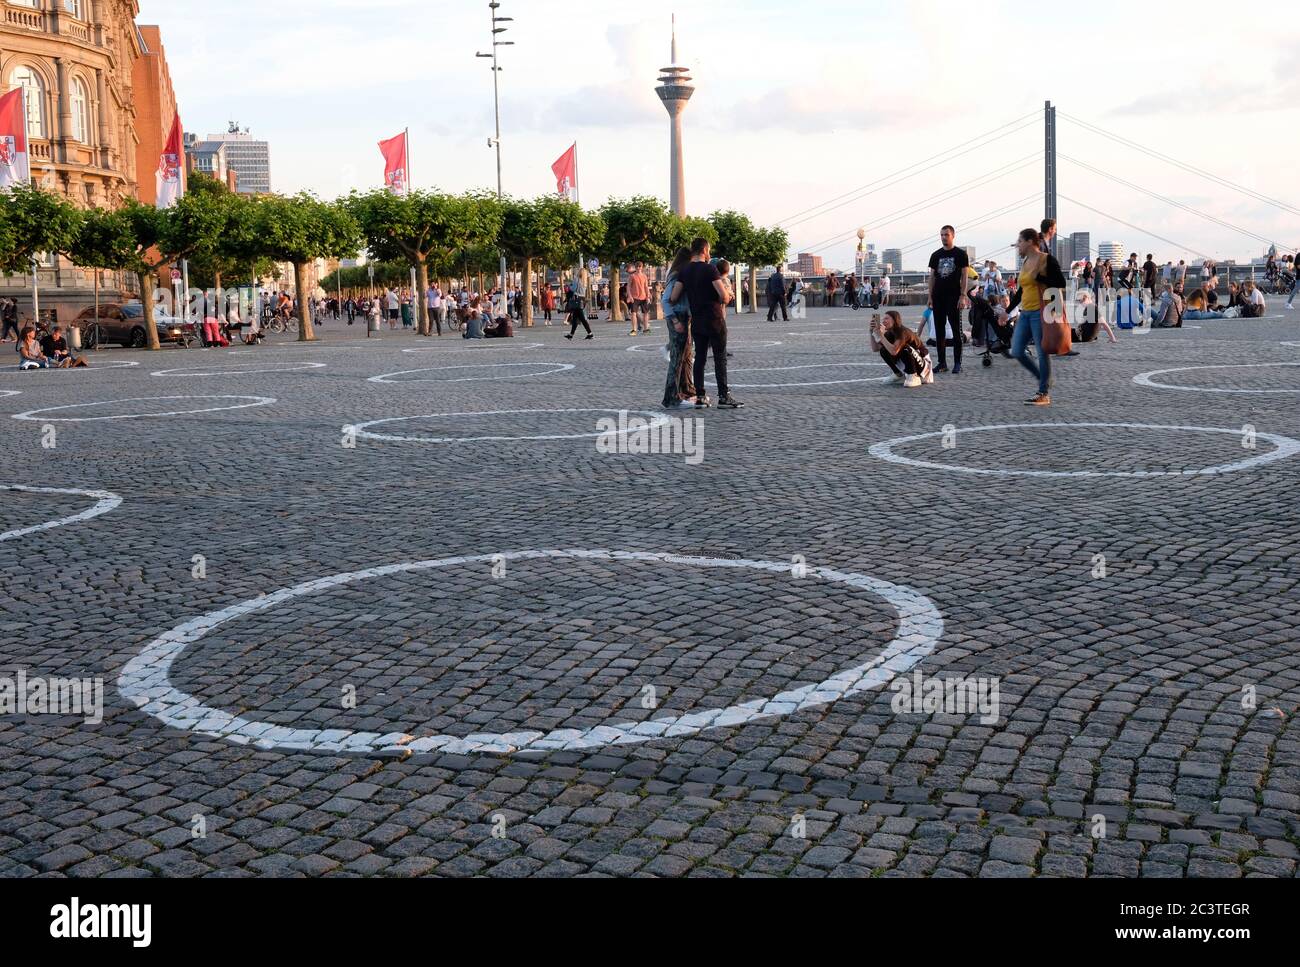 Düsseldorf, Germania - 12 giugno 2020: Cerchi bianchi dipinti in tutta la città di Düsseldorf per incoraggiare le distanzazioni sociali nelle aree pubbliche. Foto Stock